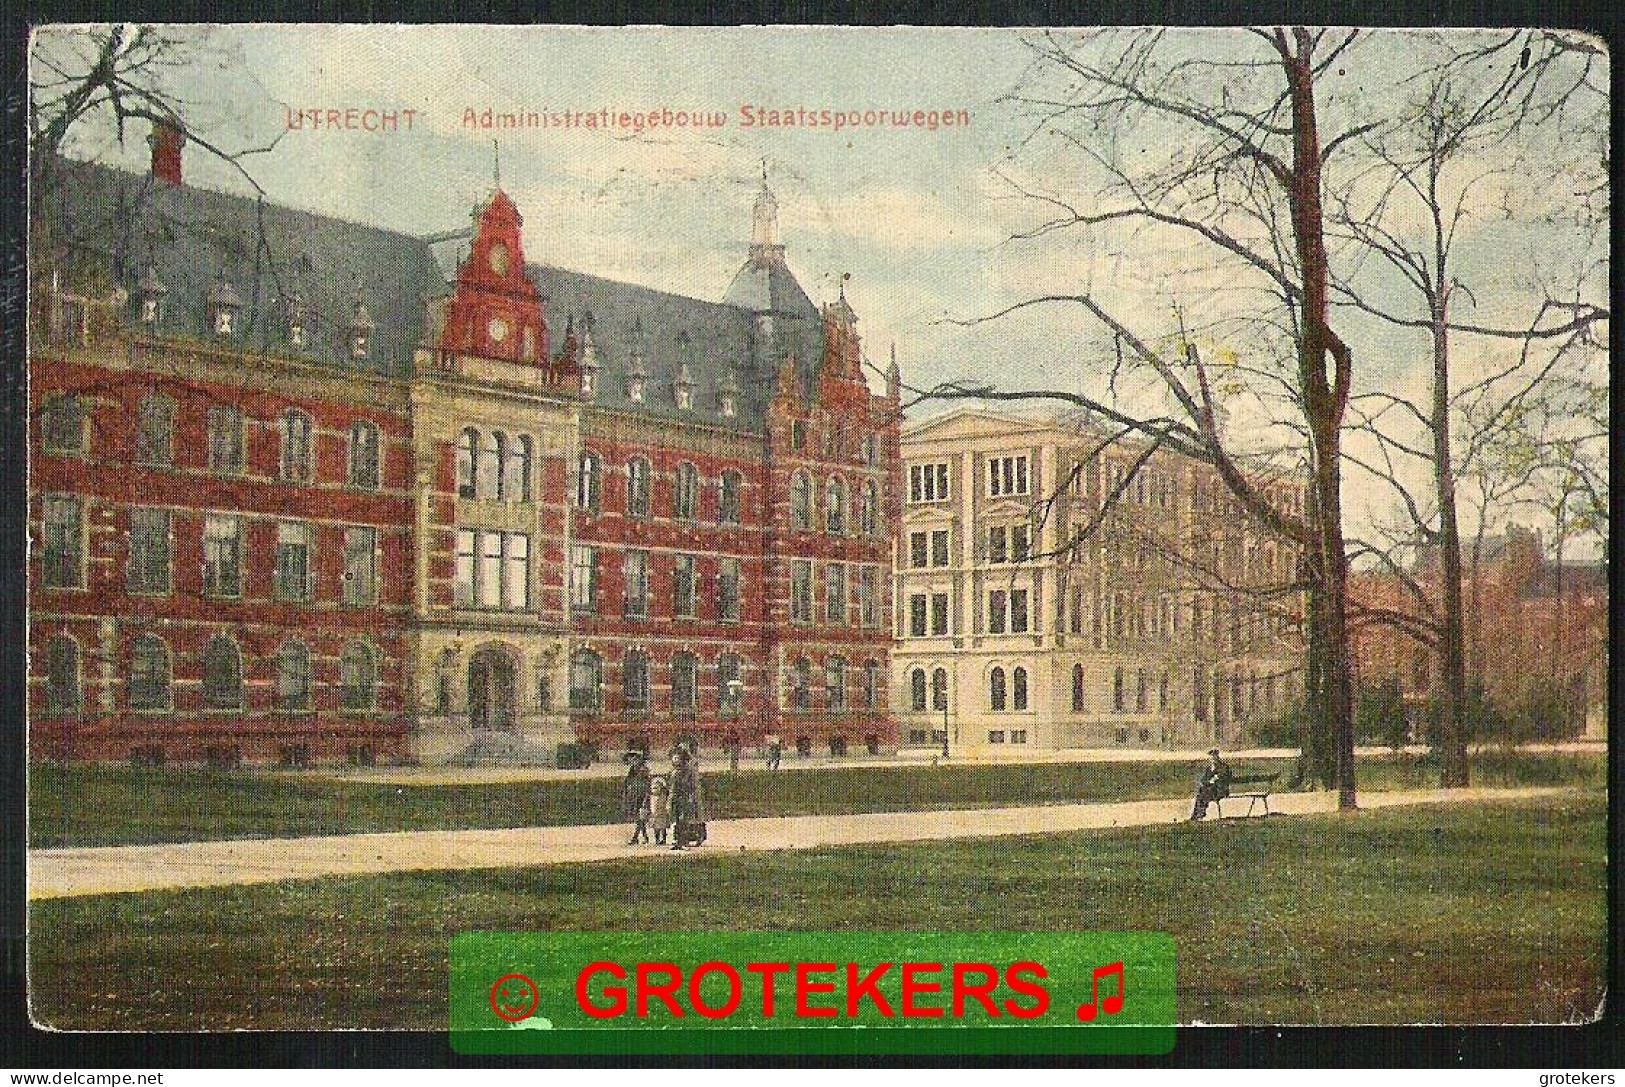 UTRECHT Administratiegebouw Staatsspoorwegen 1921 - Utrecht